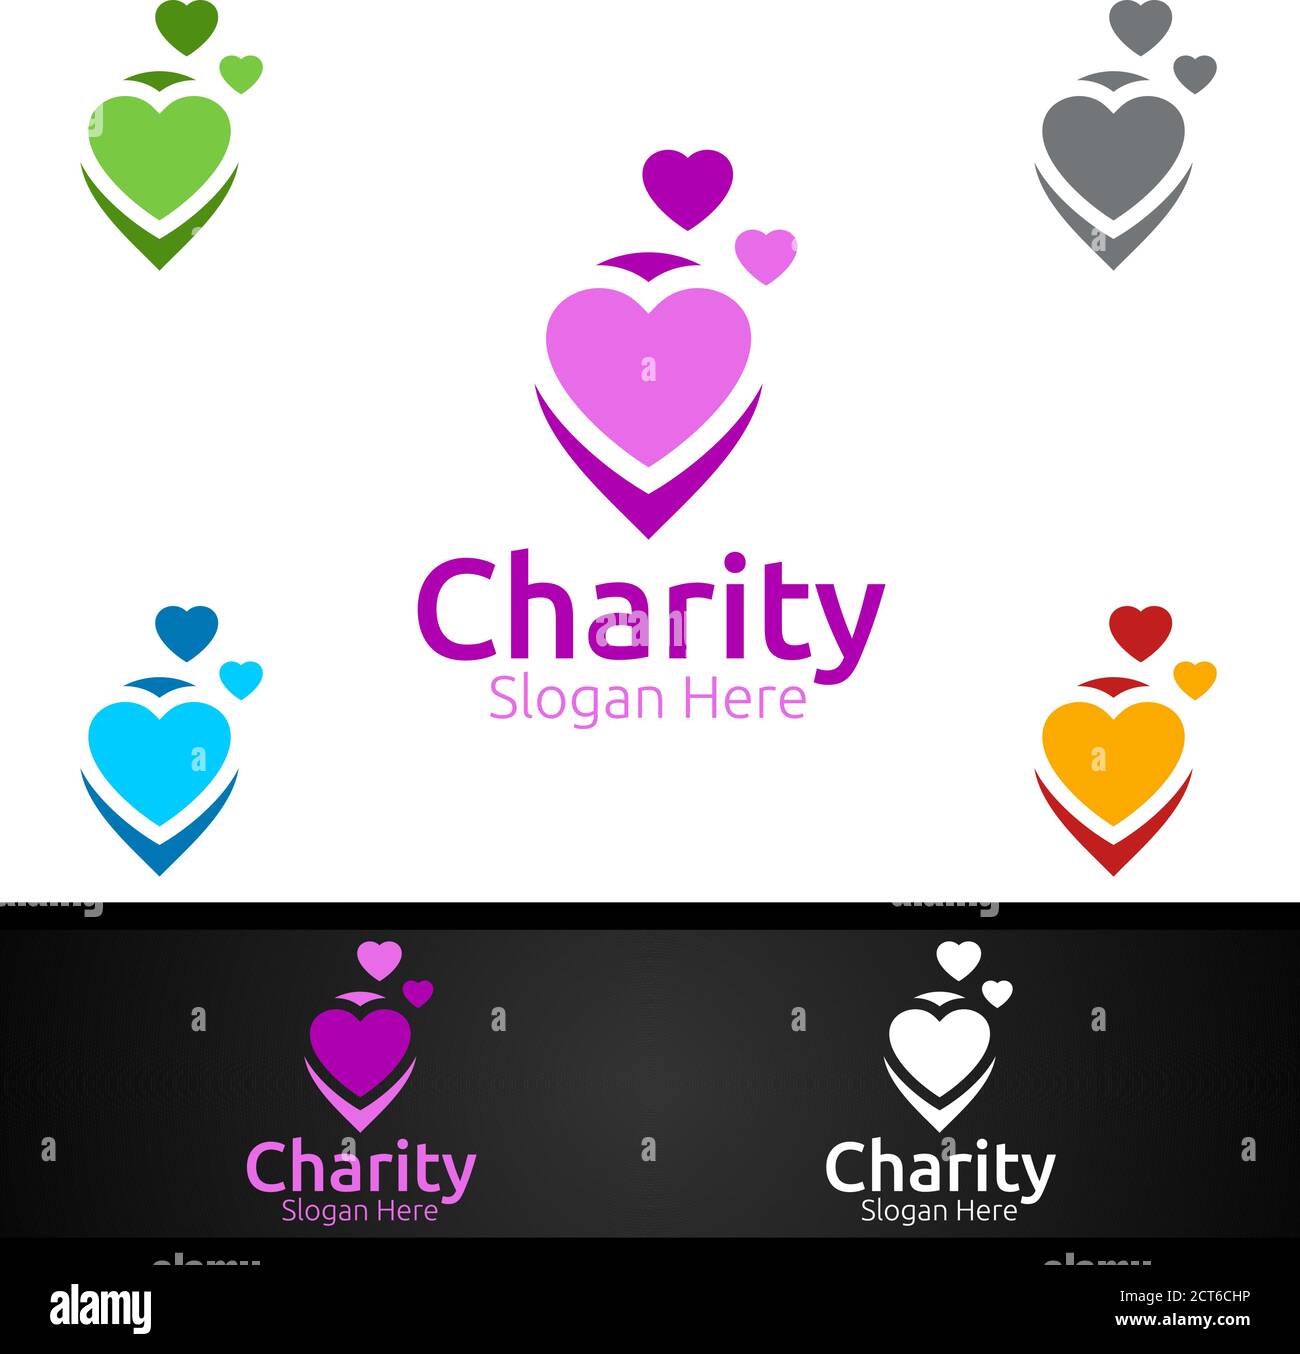 PIN helfende Hand Charity Foundation Kreatives Logo für freiwillige Kirche Oder Charity Spende Design Stock Vektor